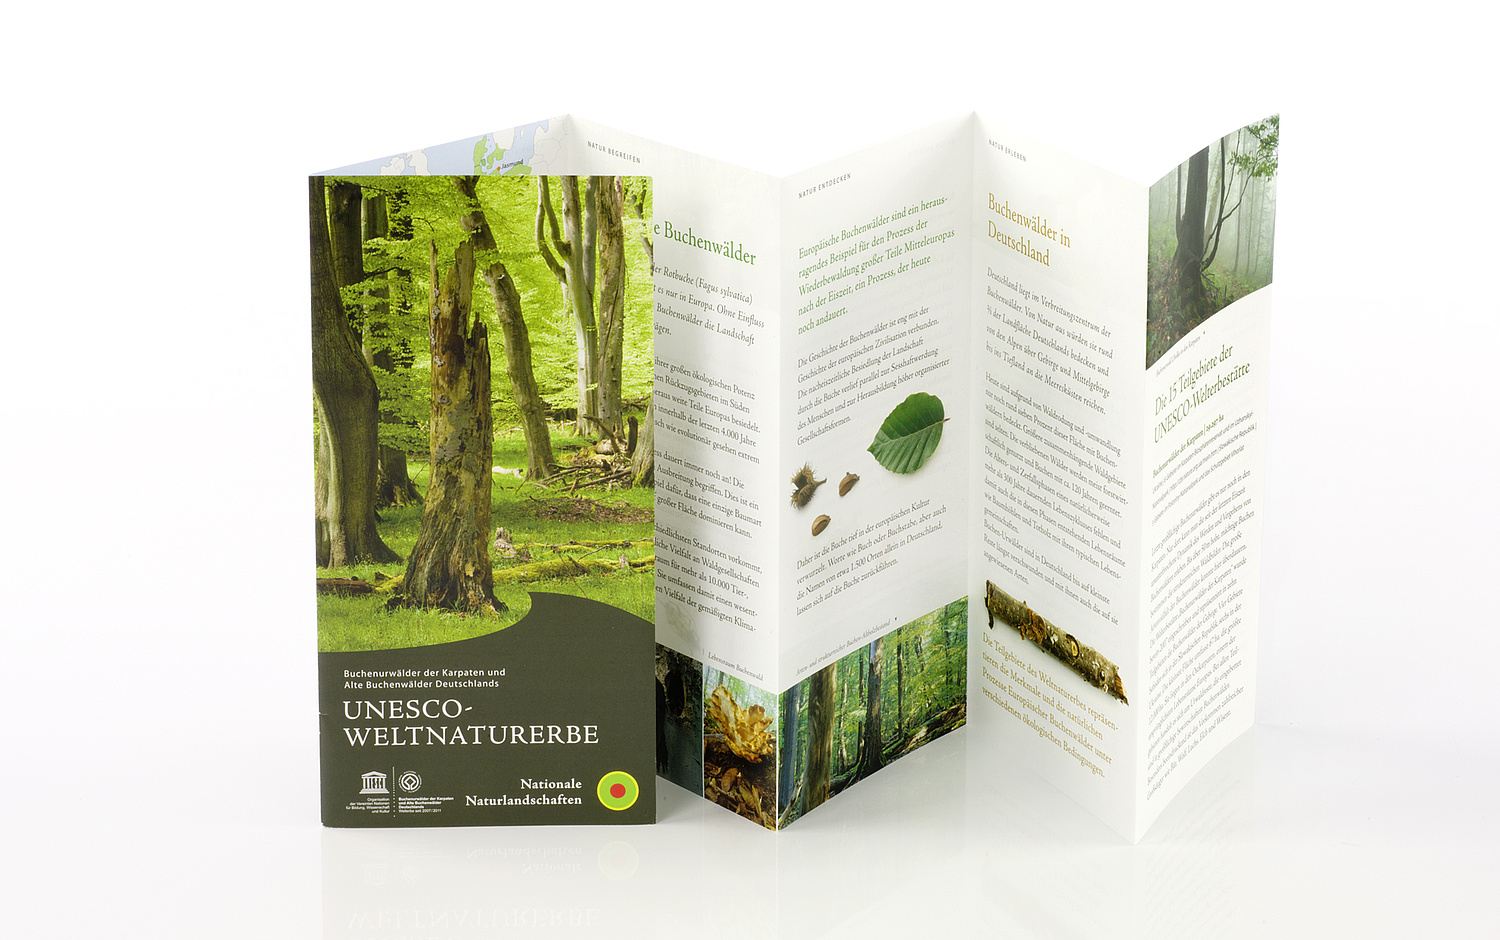 Das Bild zeigt das Faltblatt des UNESCO Weltnaturerbes "Buchenurwälder der Karpaten und Alte Buchenwälder Deutschlands". (© Papenfuss | Atelier)